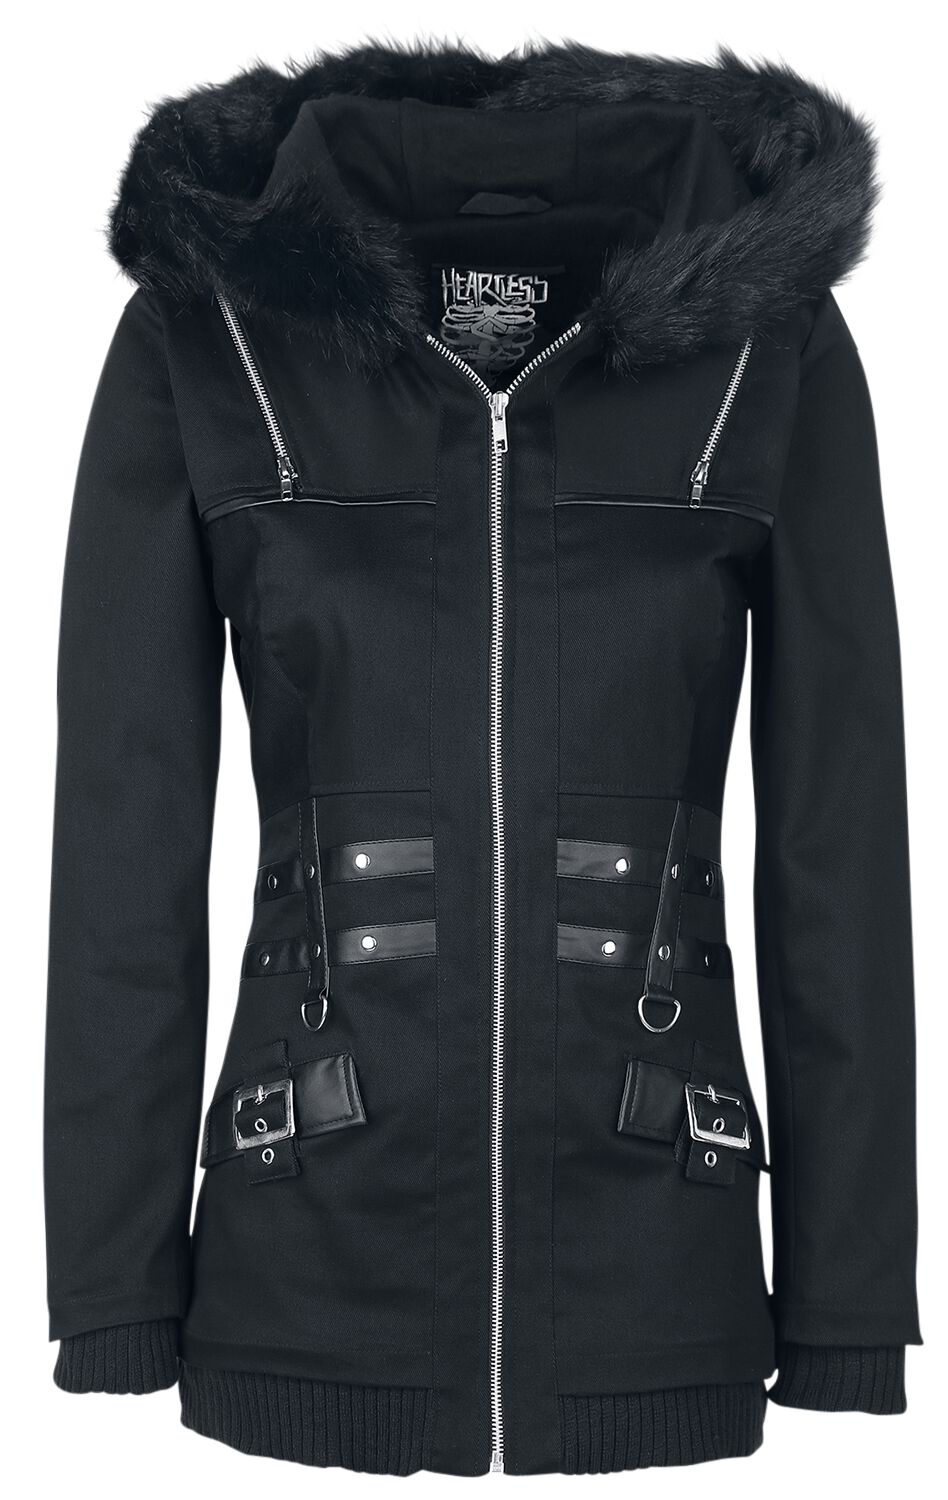 Heartless - Gothic Übergangsjacke - Sara Jacket - XS bis XL - für Damen - Größe XL - schwarz